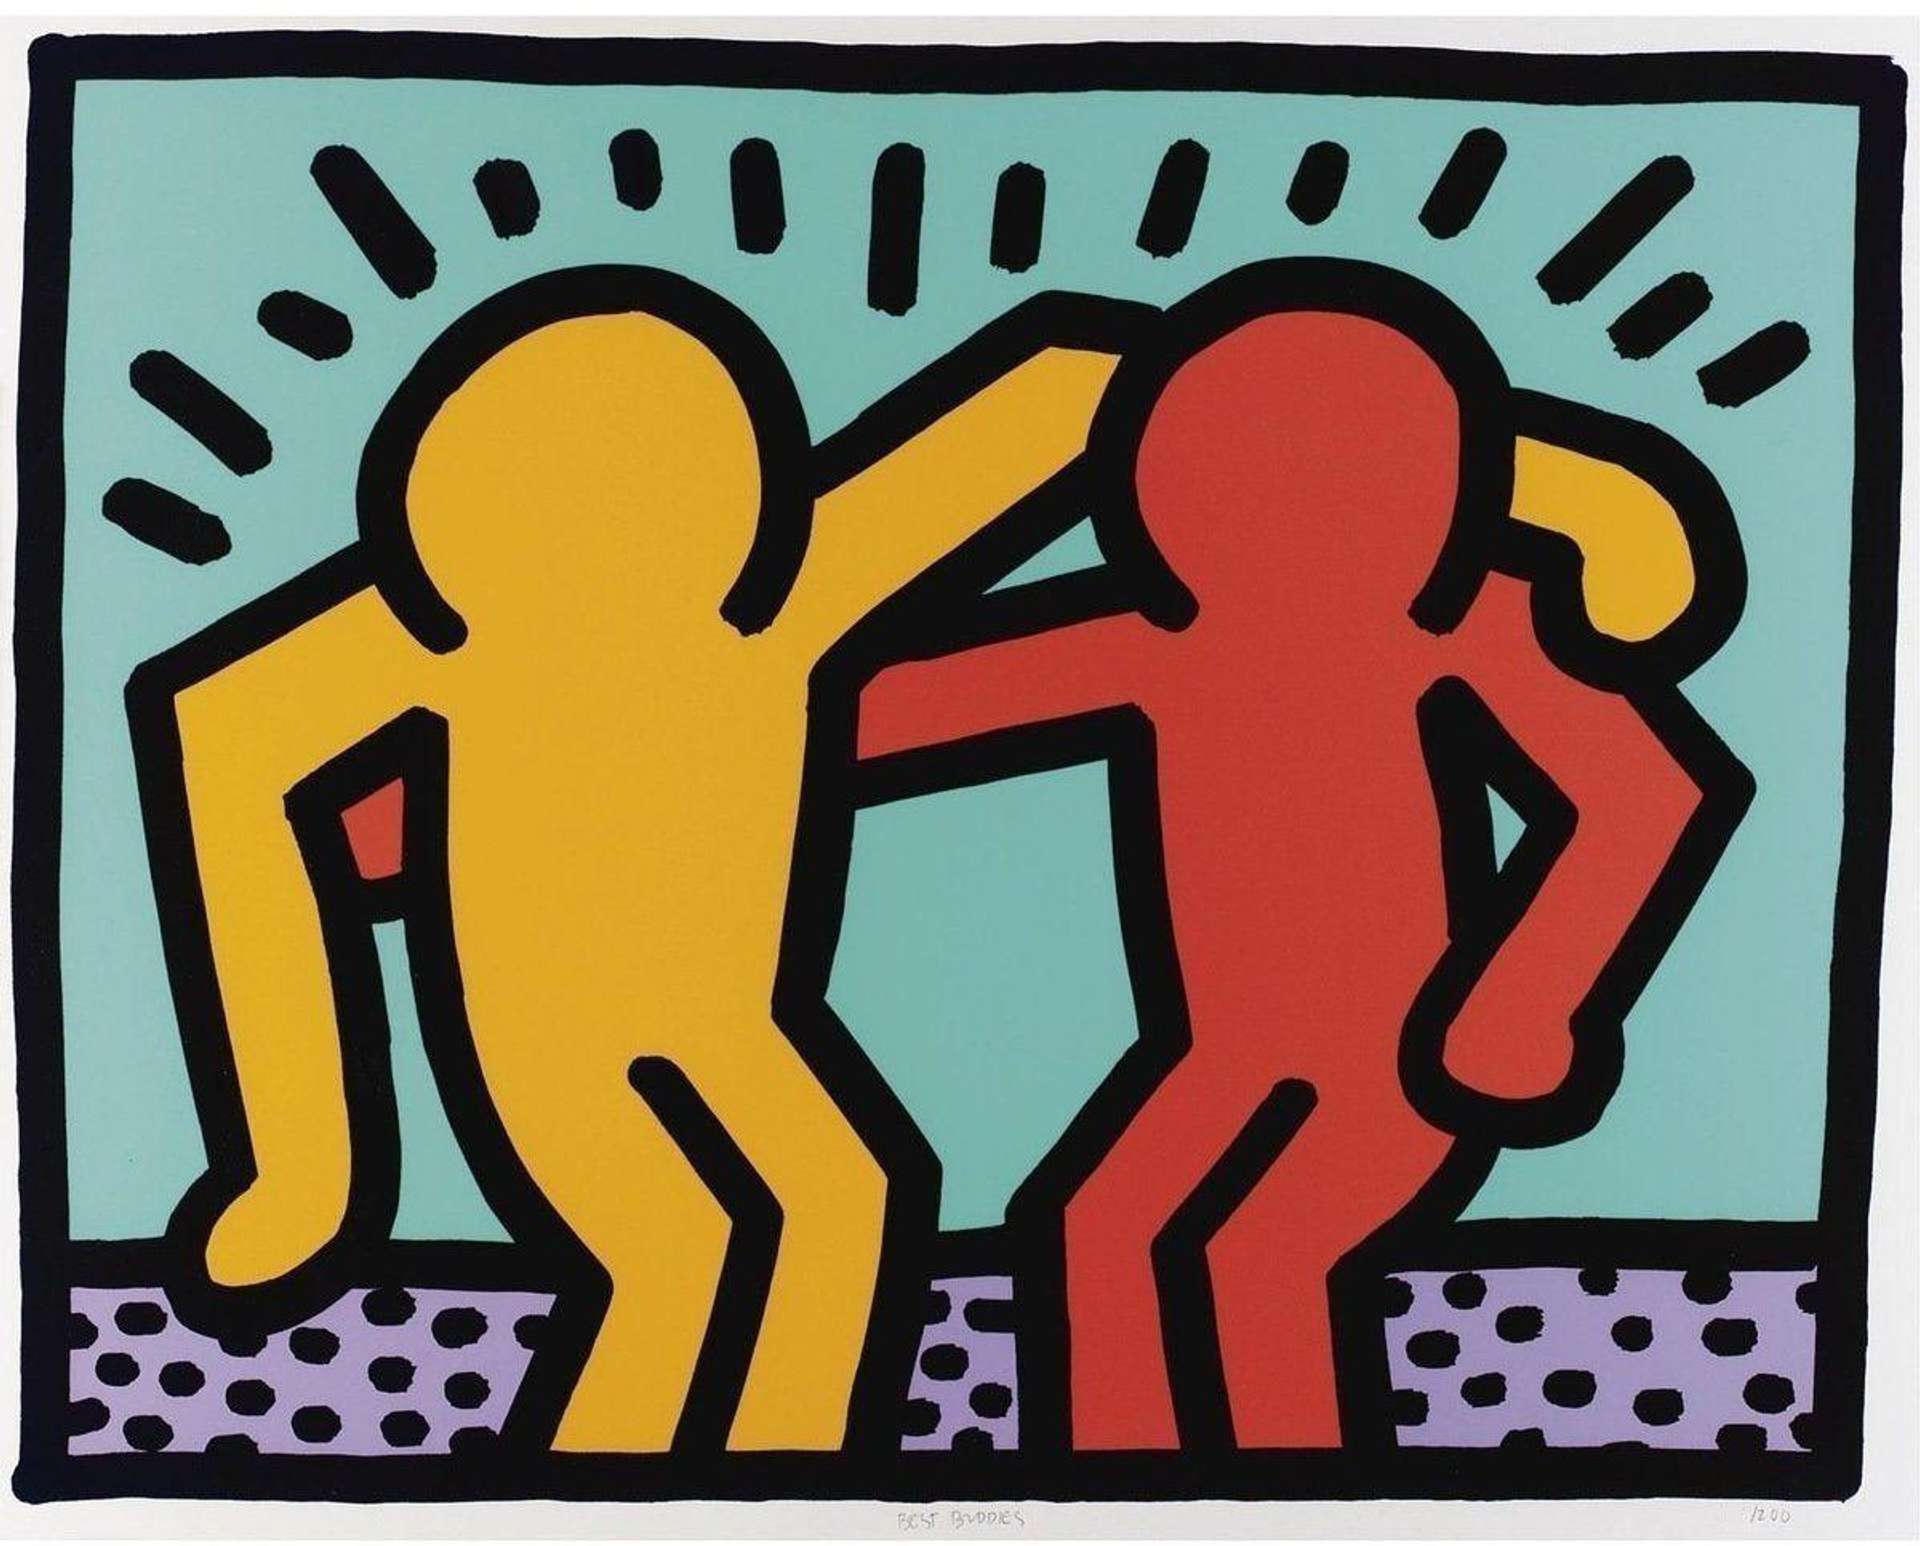 Best Buddies by Keith Haring - MyArtBroker